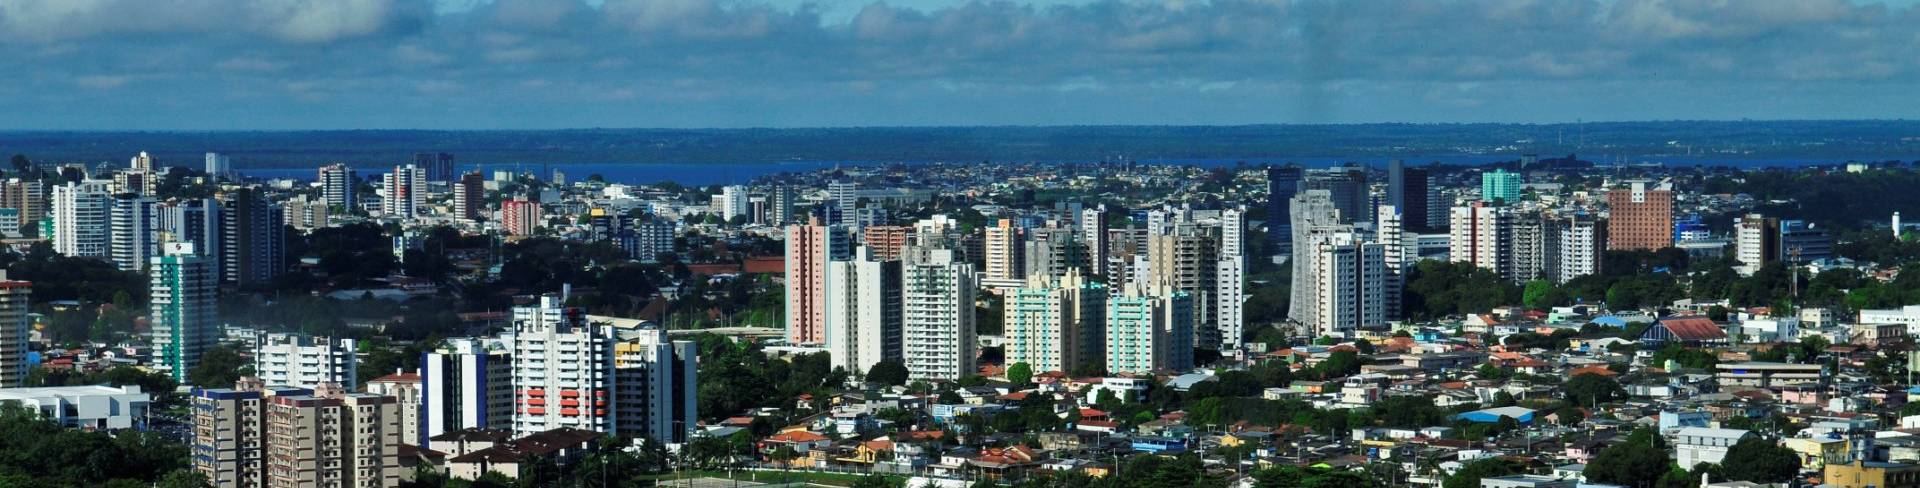 Манаус - город в Бразилии